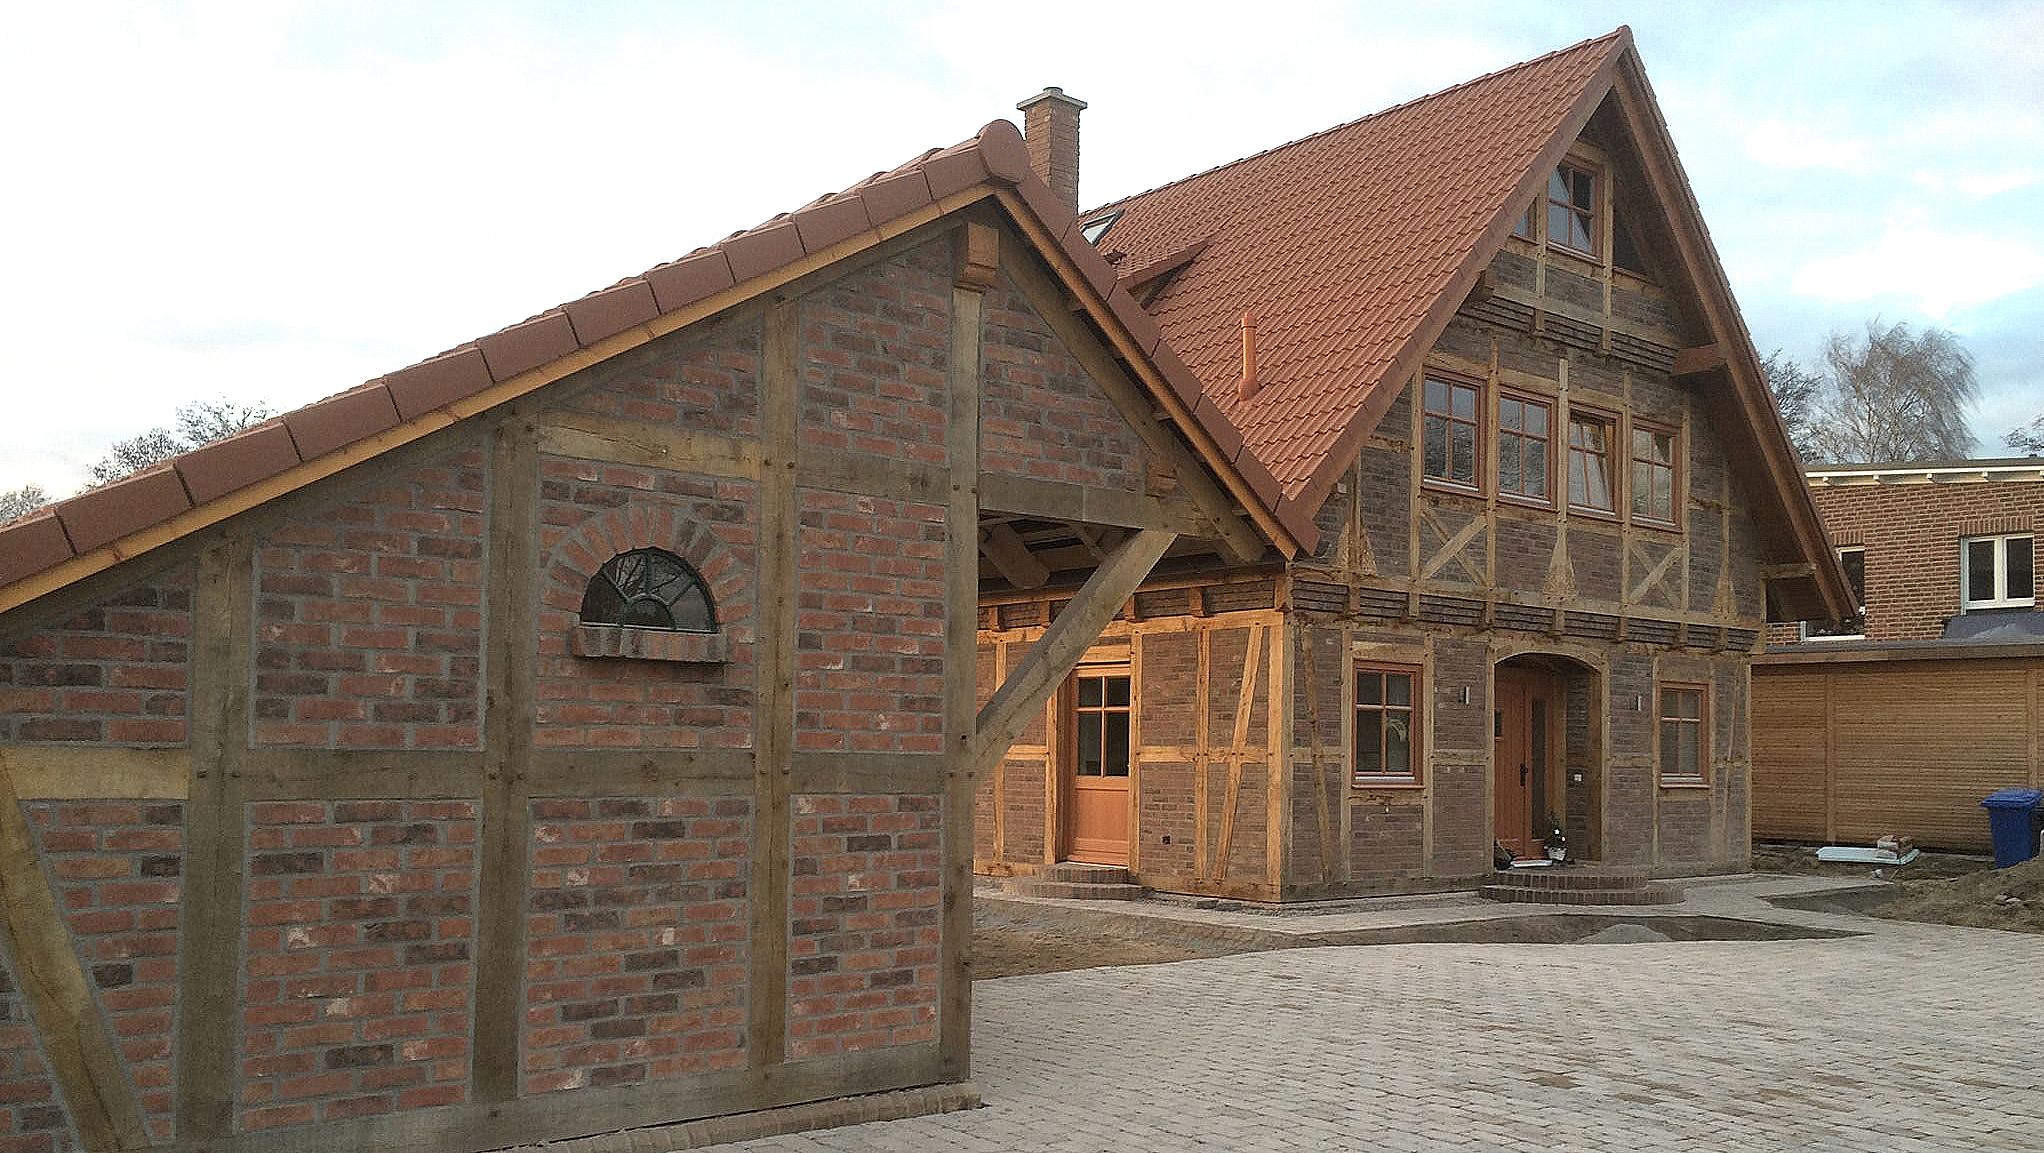 Fachwerk-Haus in Hanstedt- Objektübergabe am 10. Dezember 2015